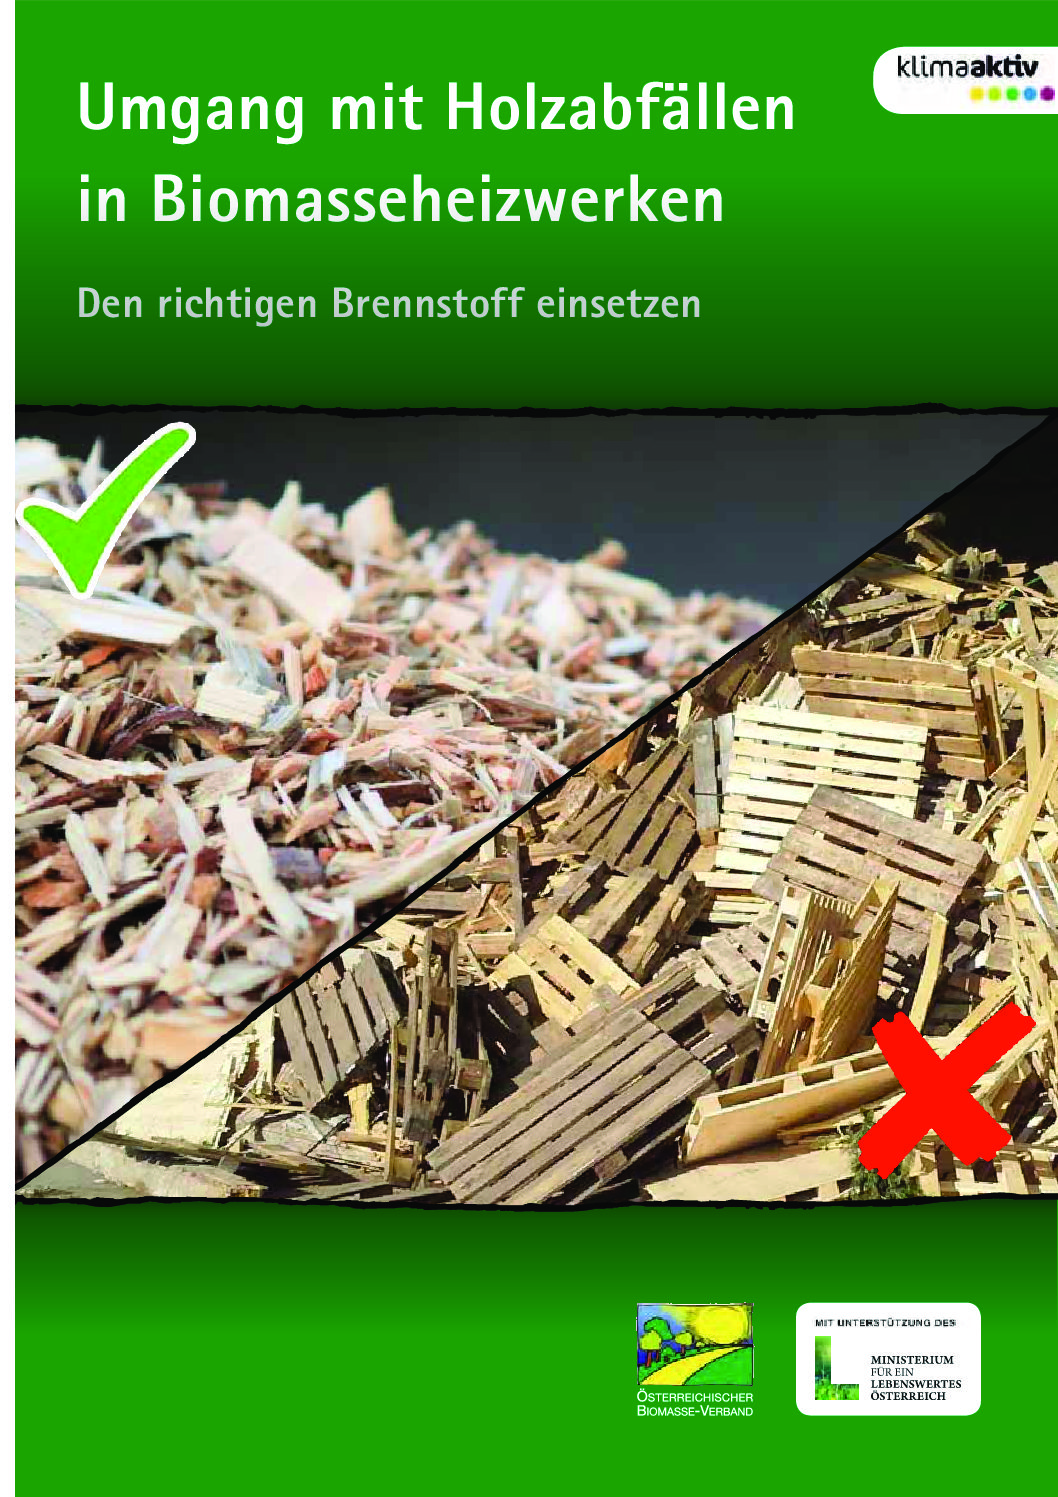 Umgang mit Holzabfällen in Biomasseheizwerken